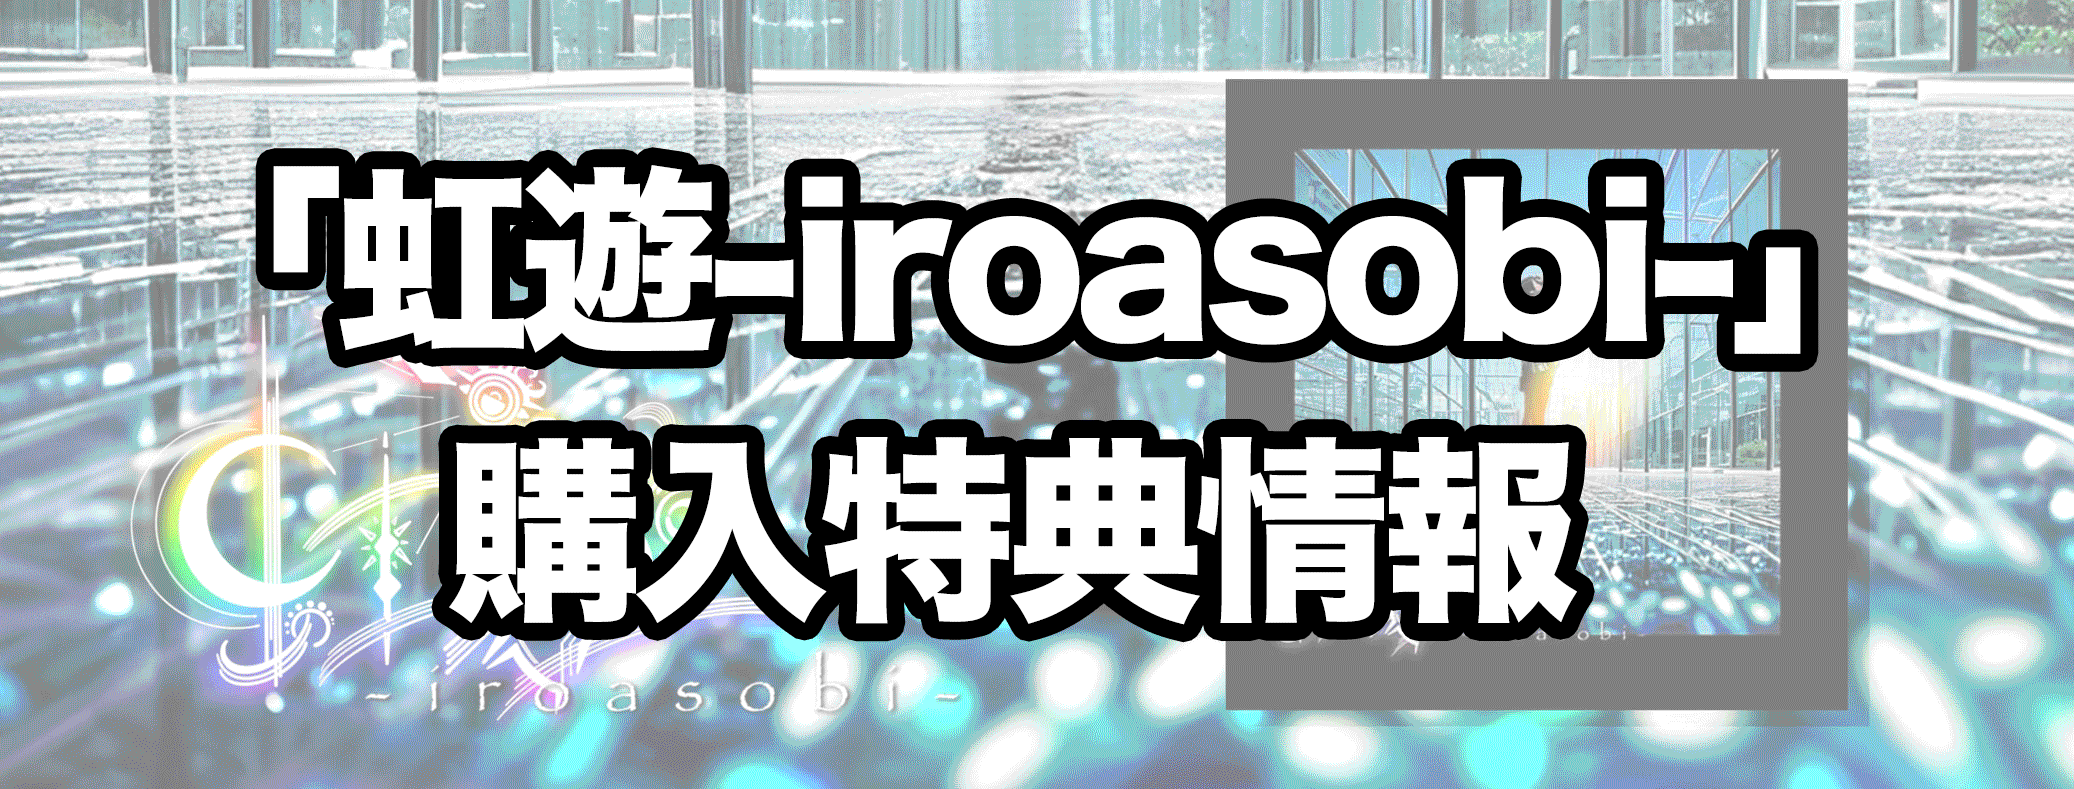 「虹遊-iroasobi-」-購入特典情報